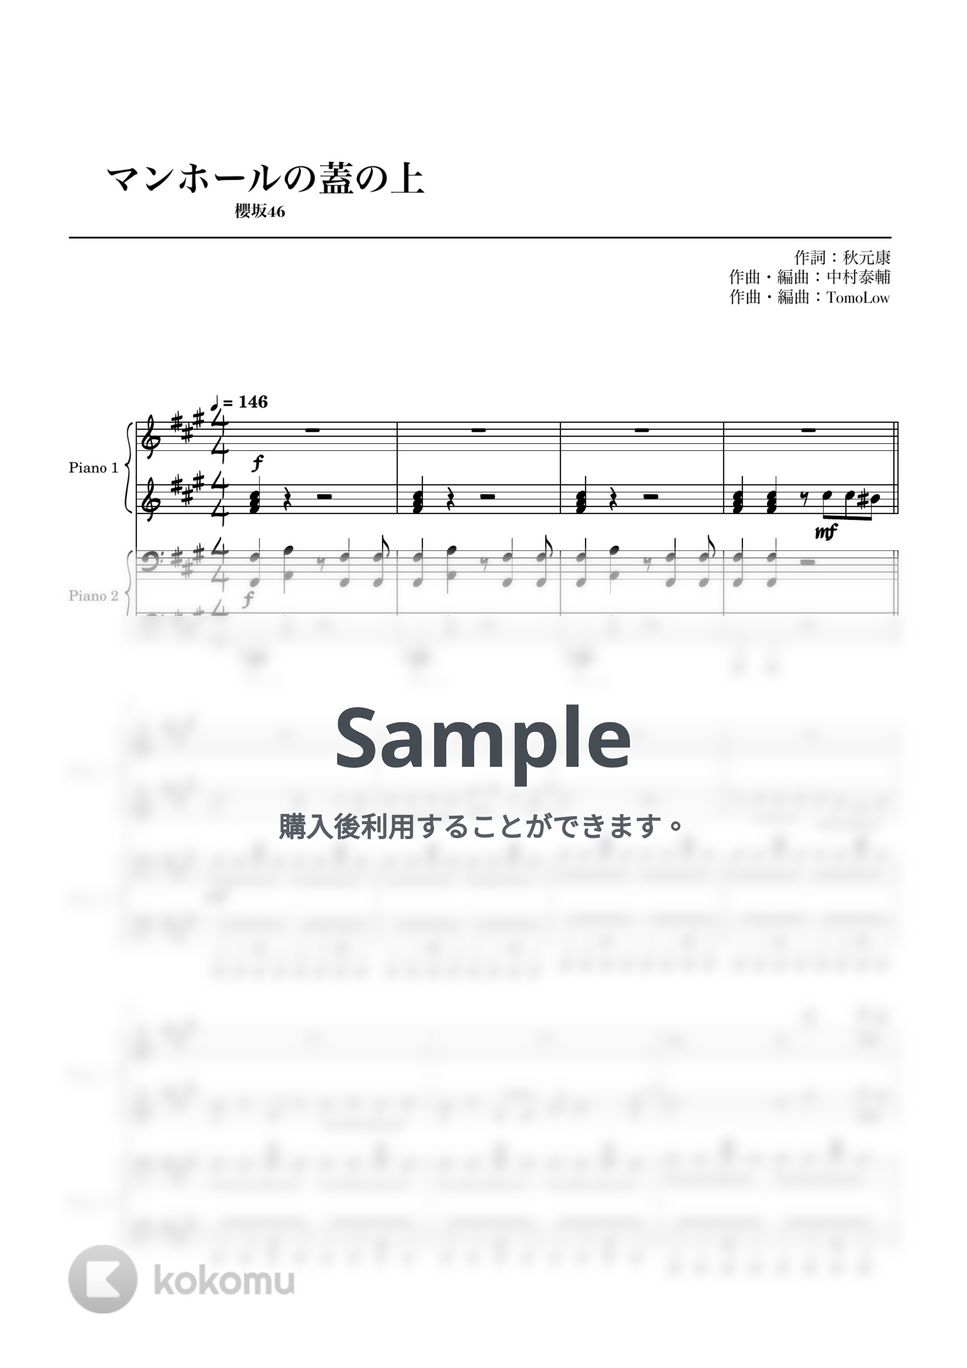 櫻坂46 - マンホールの蓋の上 (連弾) by やすpiano